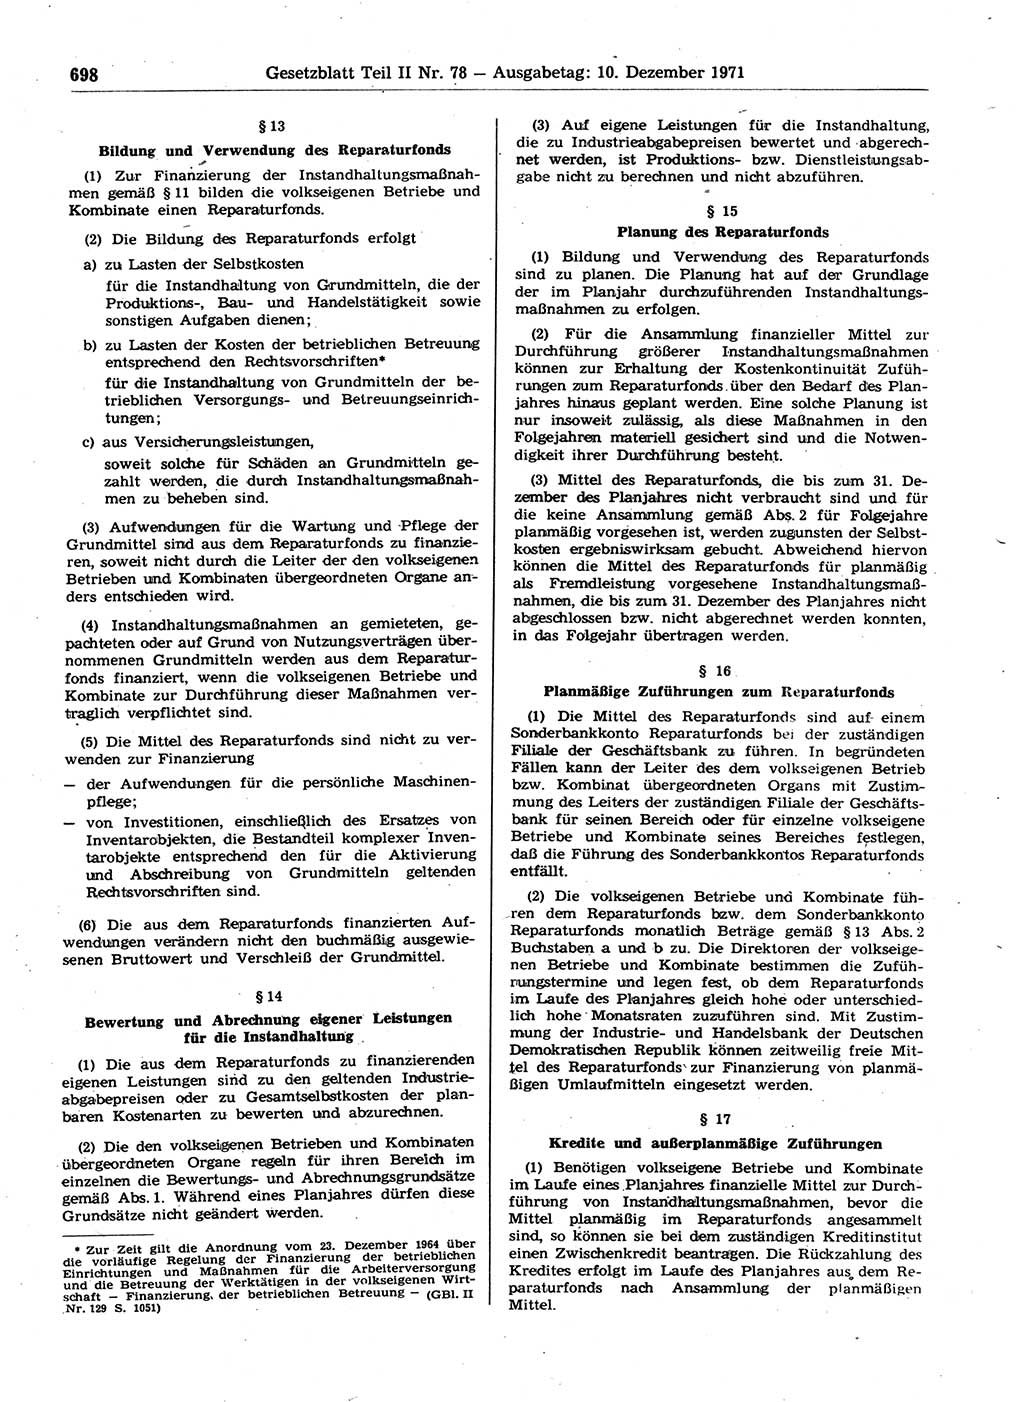 Gesetzblatt (GBl.) der Deutschen Demokratischen Republik (DDR) Teil ⅠⅠ 1971, Seite 698 (GBl. DDR ⅠⅠ 1971, S. 698)